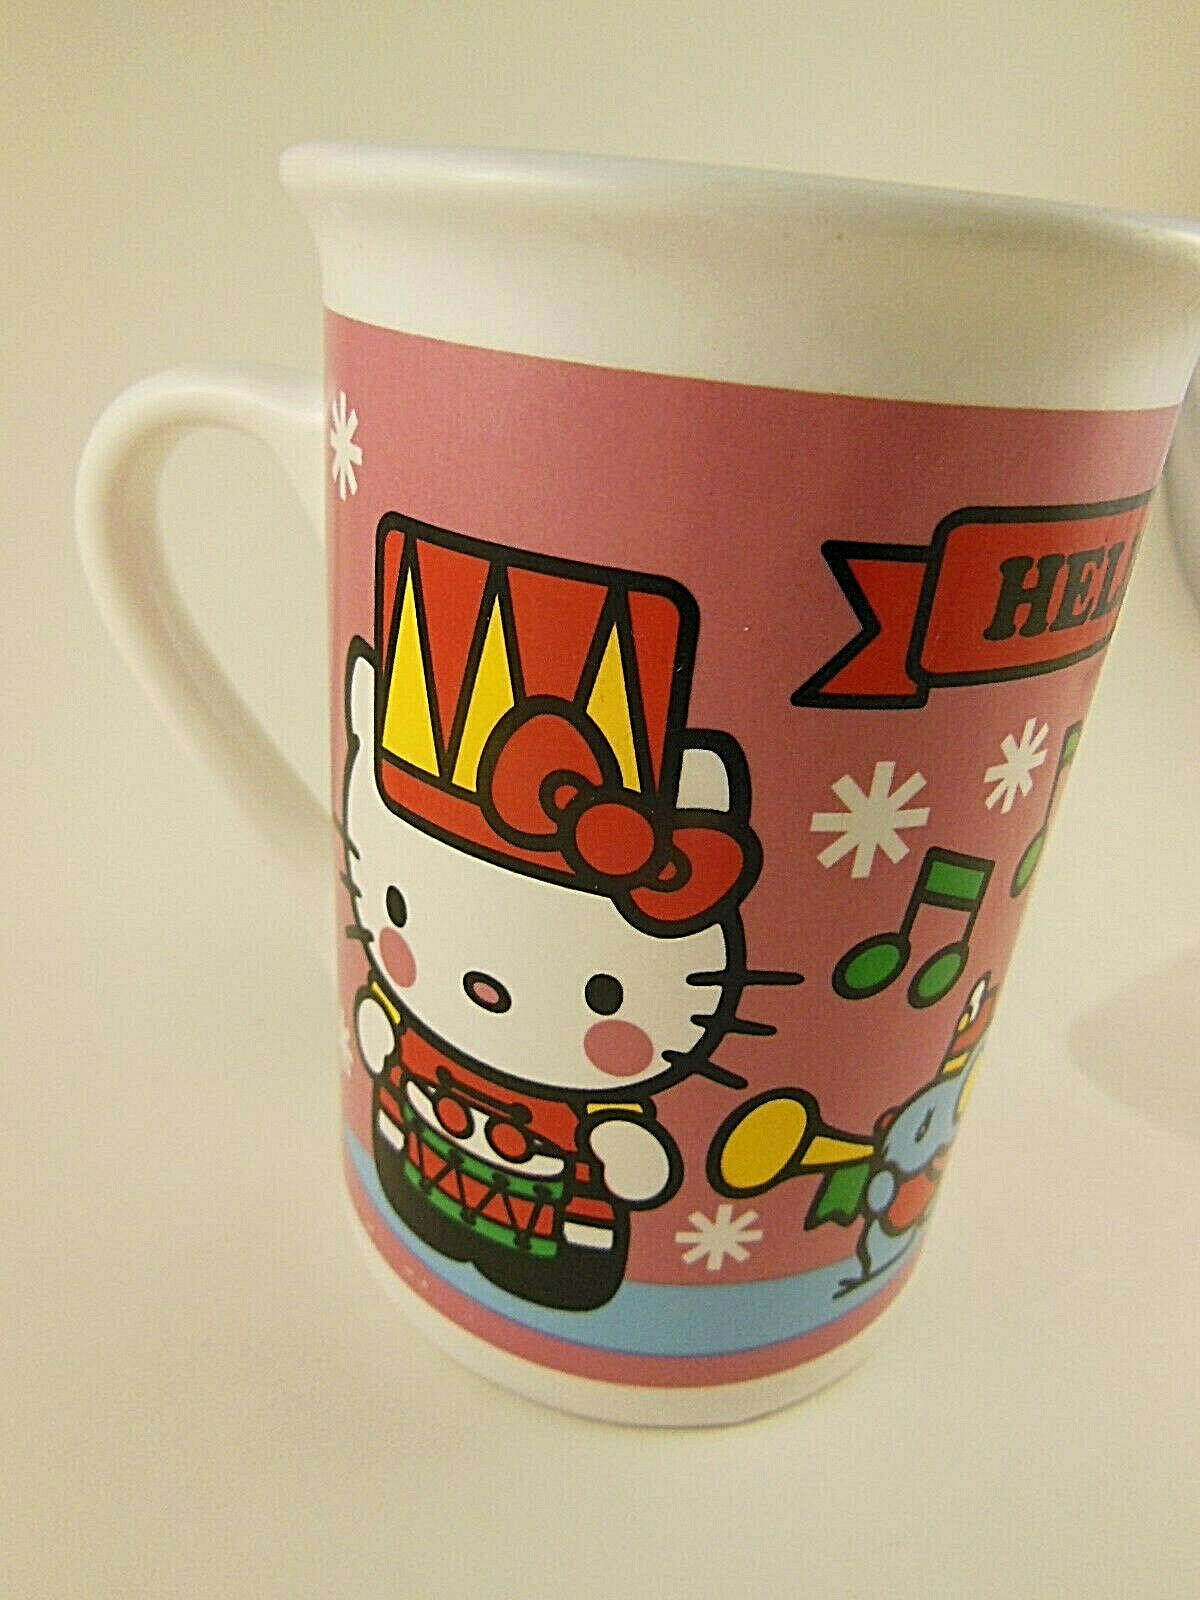 Primary image for Hello Kitty Christmas Mug Cup Sanrio Japan 2013